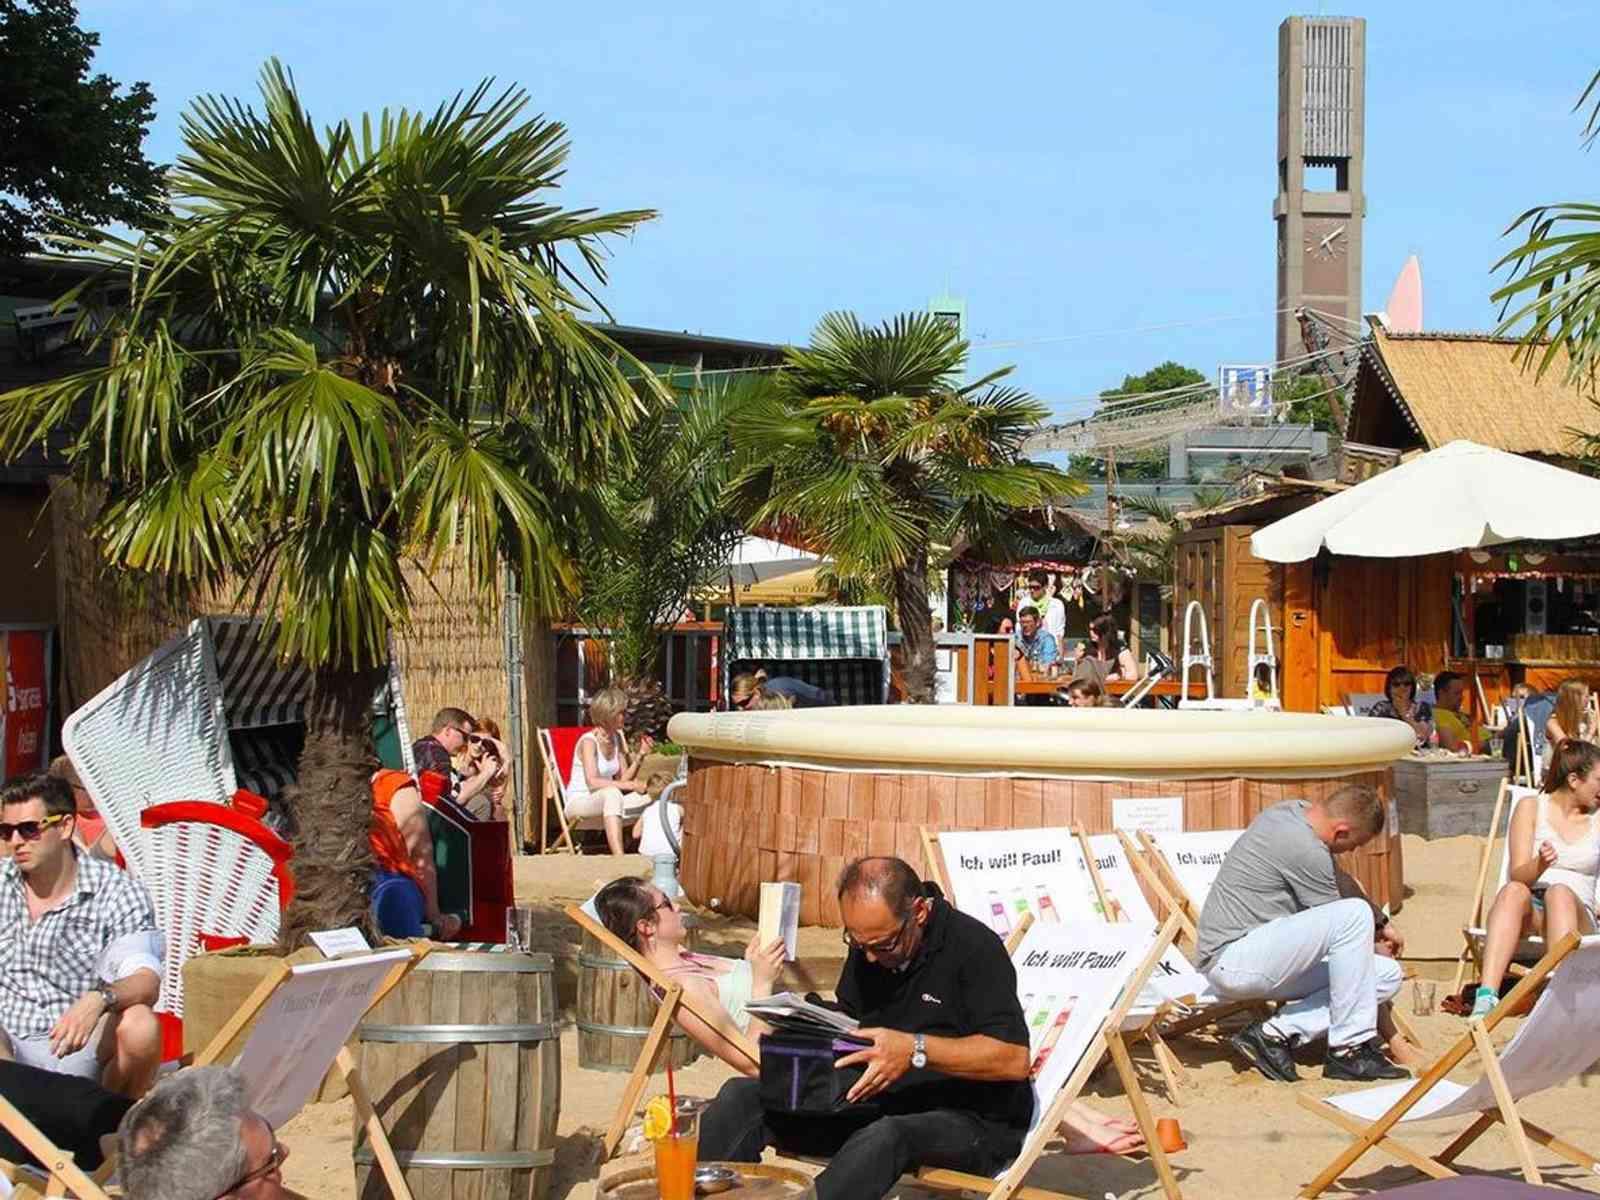 Gäste entspannen in einem Beach Club mit Sand, Palmen und Liegestühlen.